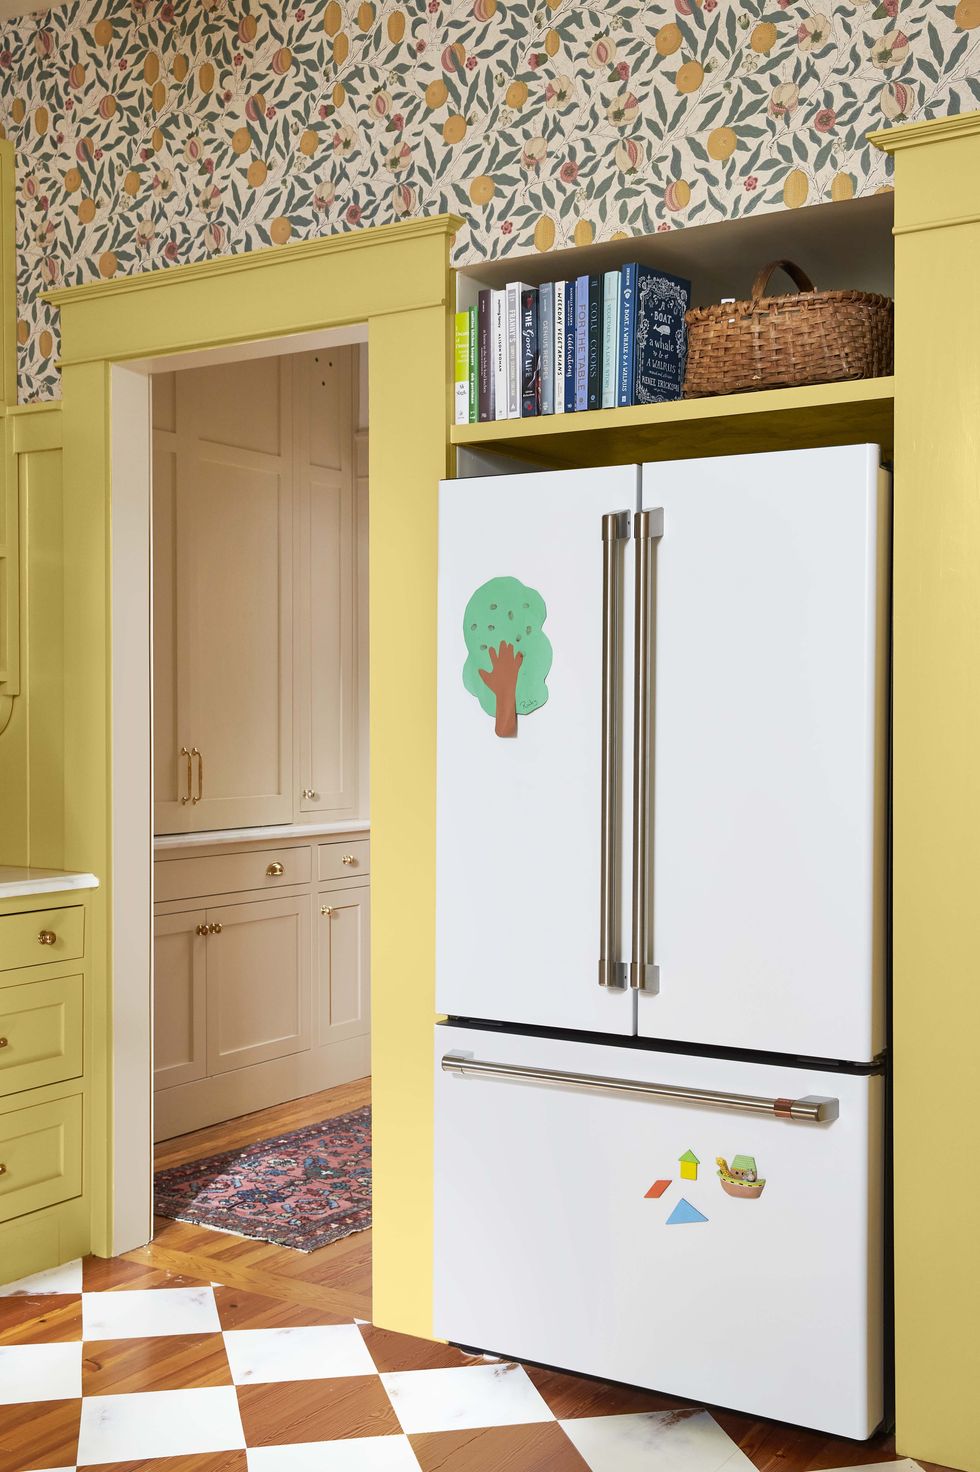 british style kitchen white refrigerator